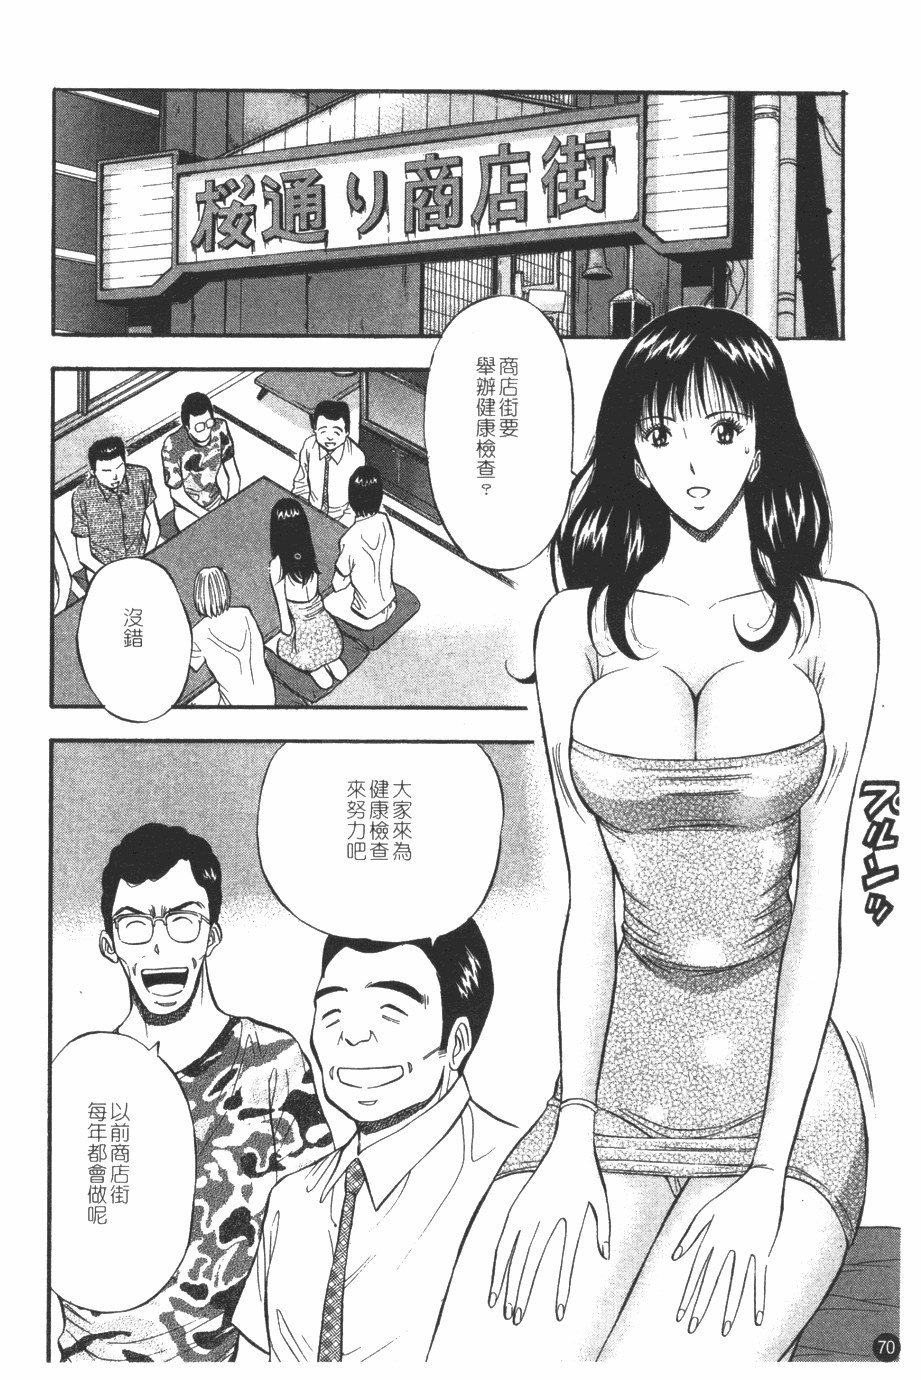 [Nagashima Chosuke] Sakuradoori no Megami - The Venus of SAKURA St. 1 [Chinese] 70